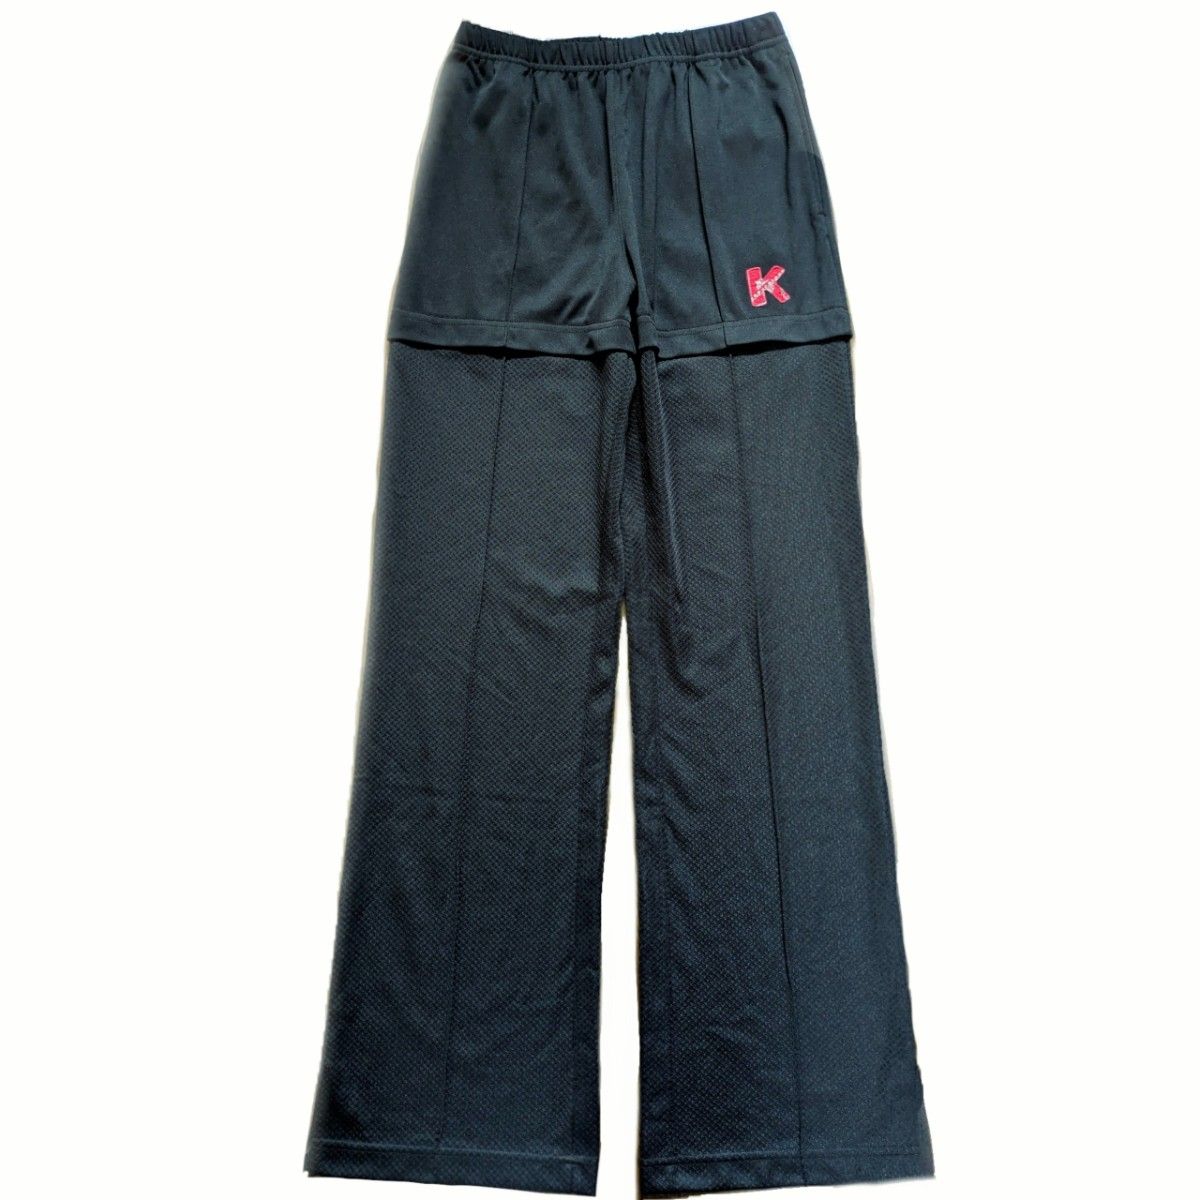 kea sport  キア  テニスウェア  ロングパンツ  XSサイズ  新品未使用  黒